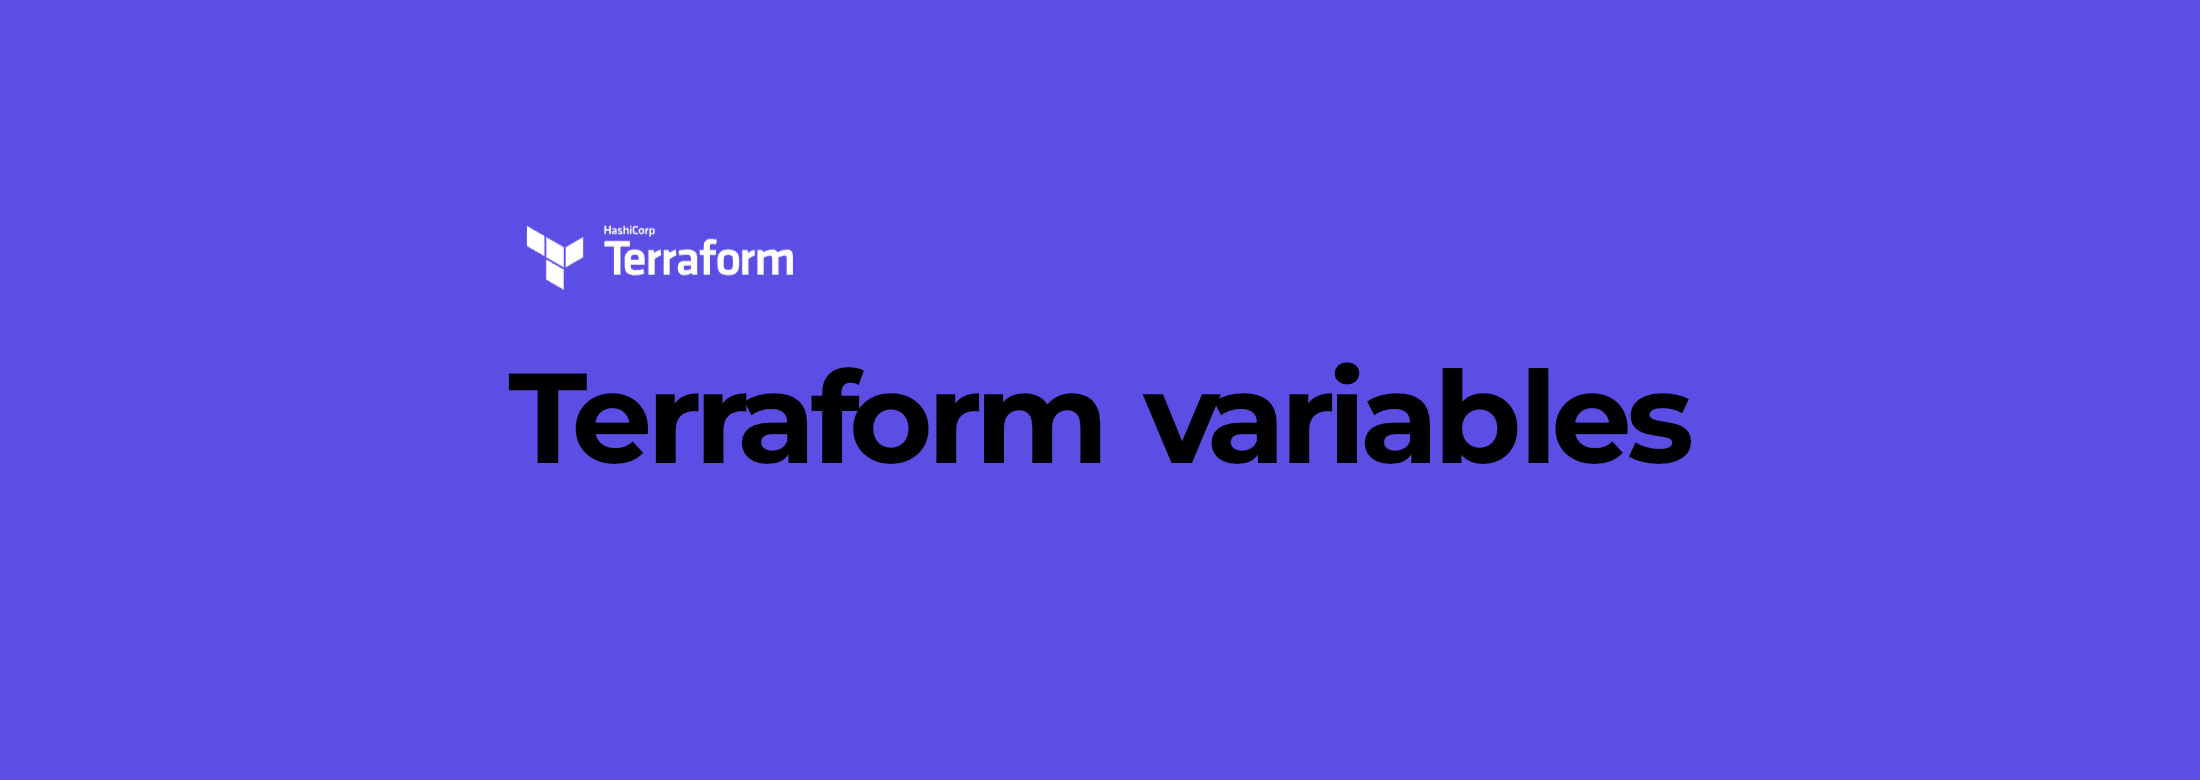 Terraform variables